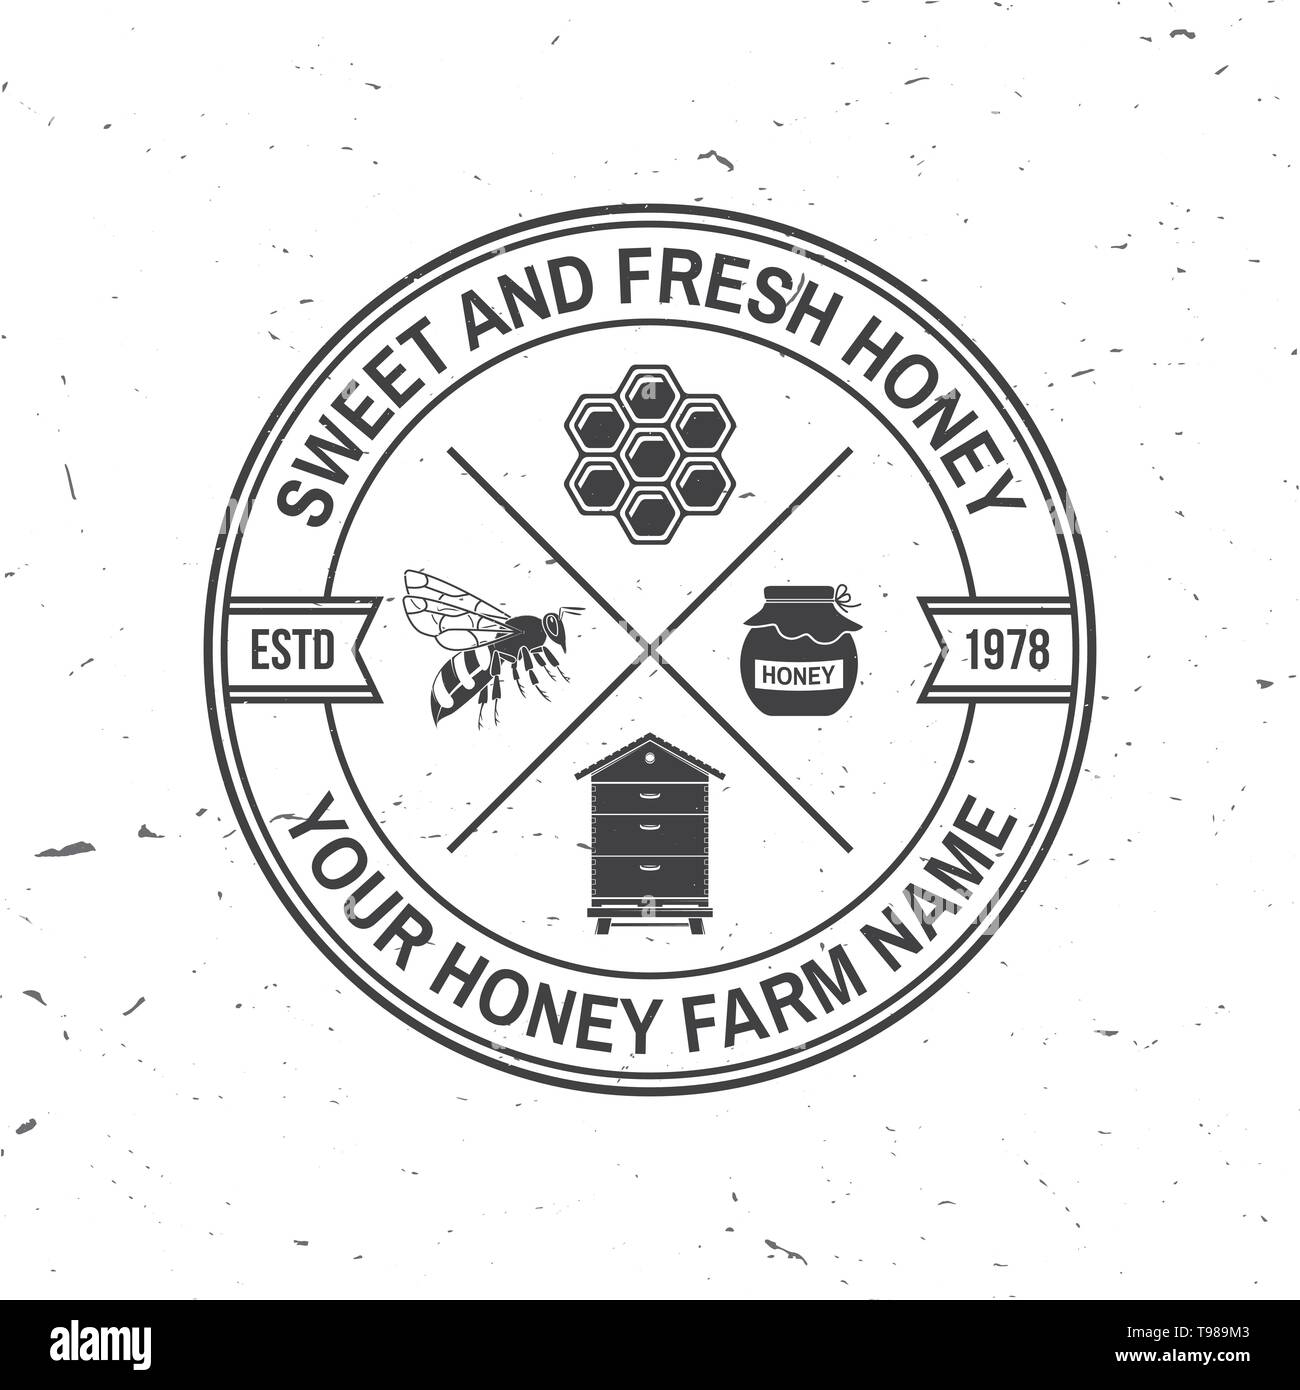 Honey Farm badge. Vector illustration. Concept pour chemise, imprimer, stamp ou tee. Design typographie Vintage à l'abeille, ruche miel et silhouette de balancier. Retro design pour l'entreprise agricole de l'abeille Illustration de Vecteur